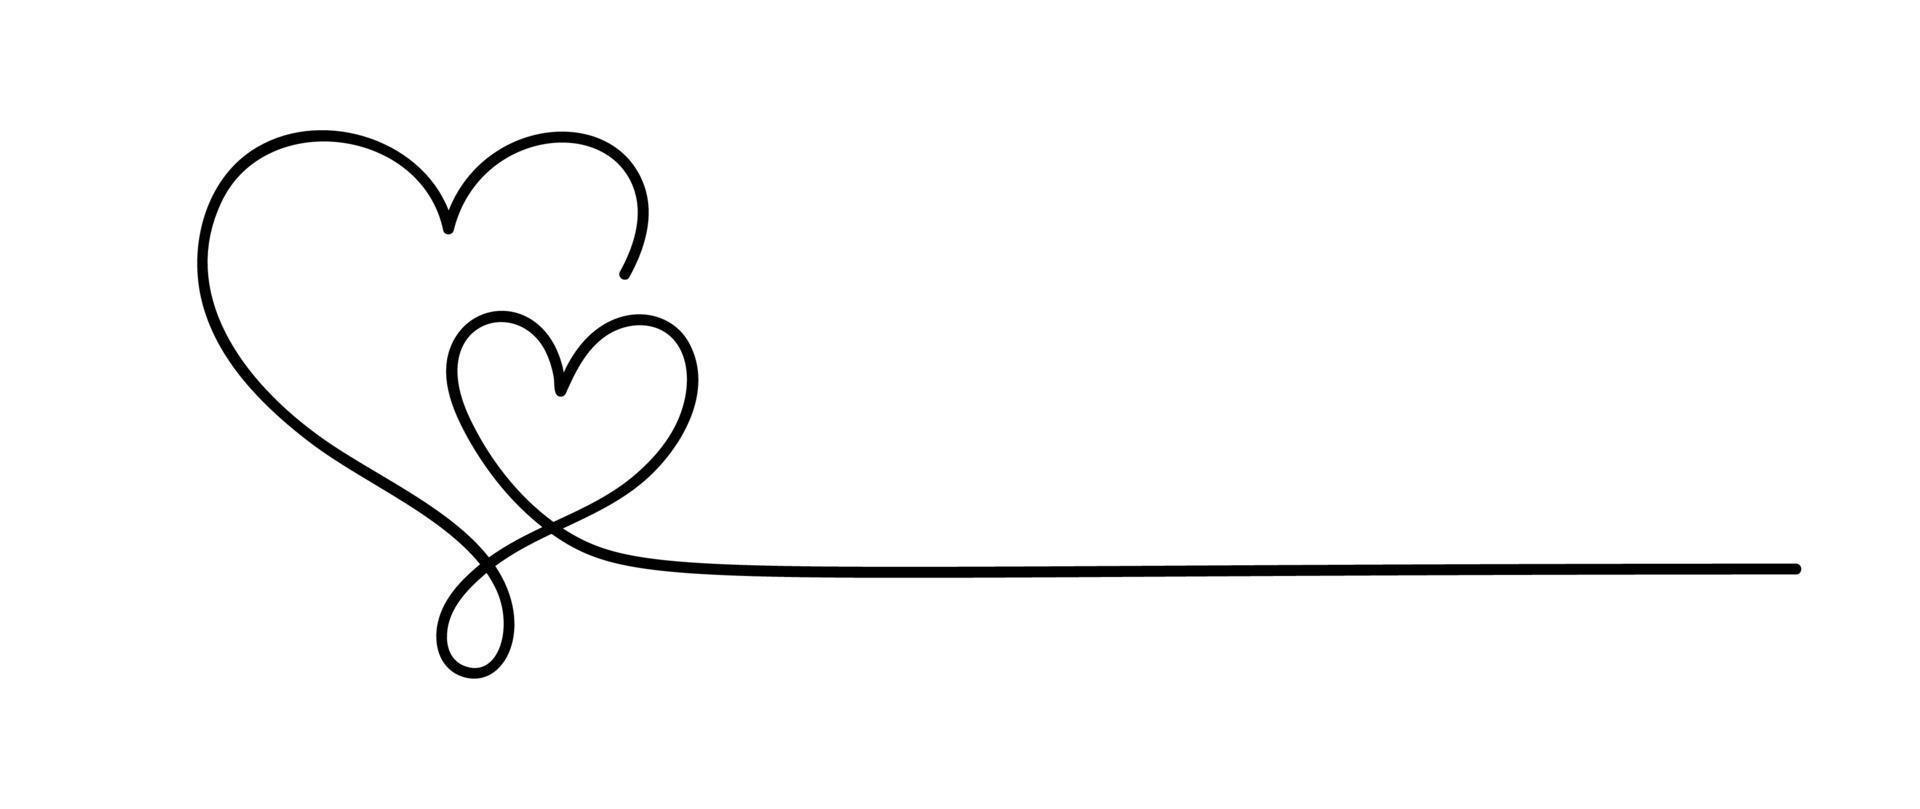 liefde pictogram vector doodle twee harten en lijn voor tekst. hand getekend valentijn dag logo monoline. decor voor wenskaart, bruiloft, tag, foto-overlay, t-shirt print, flyer, posterontwerp